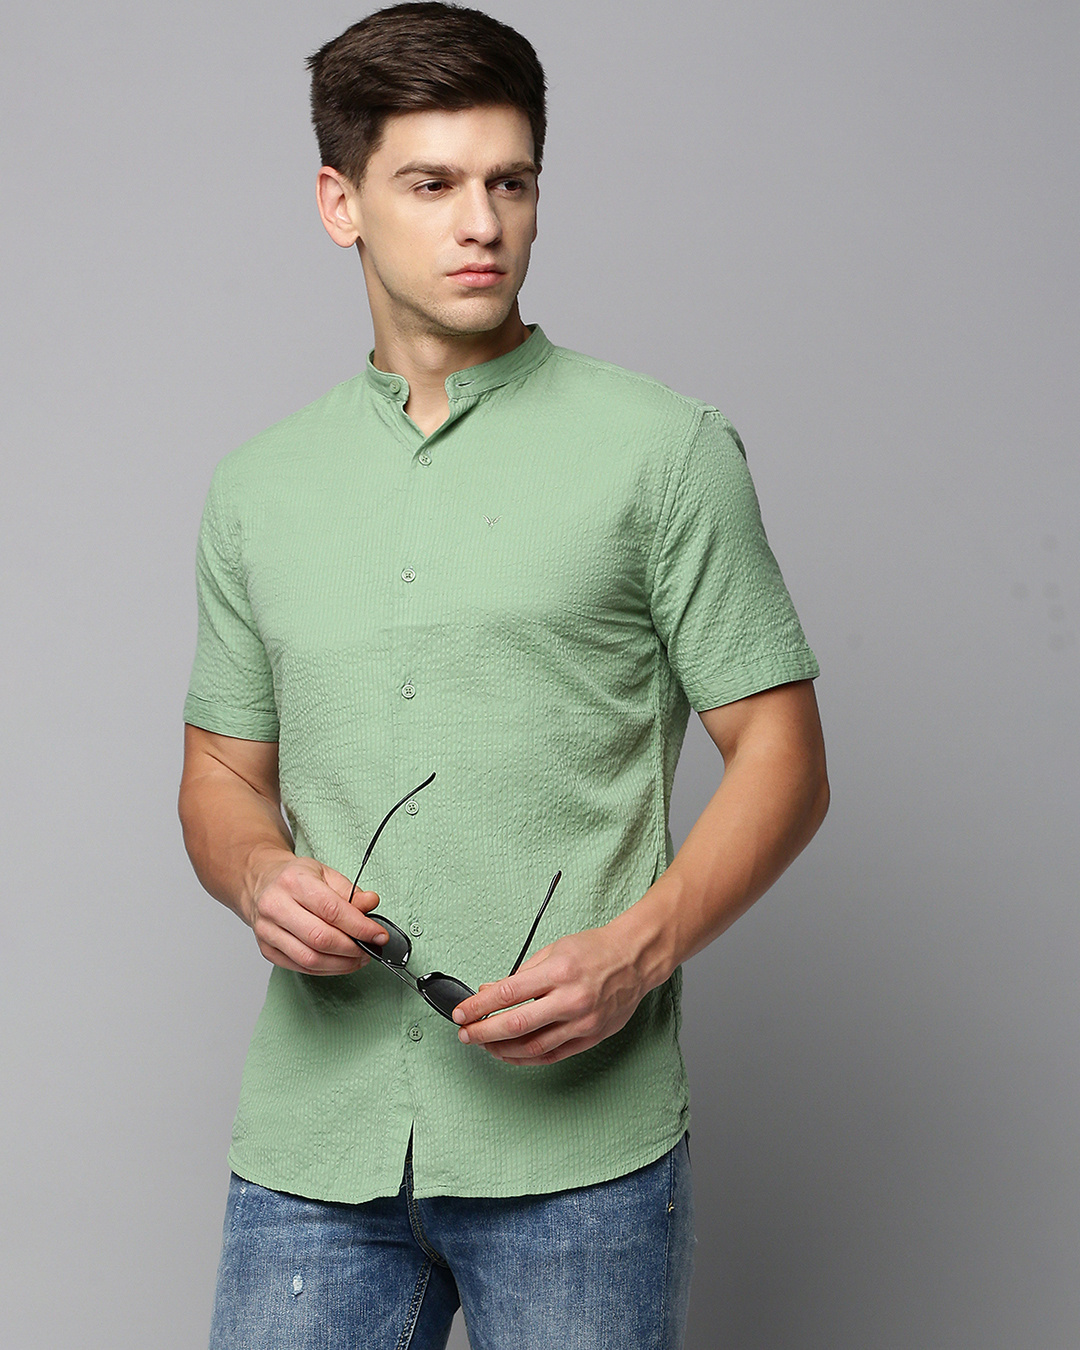 Buy Men's Green Slim Fit Shirt Online at Bewakoof